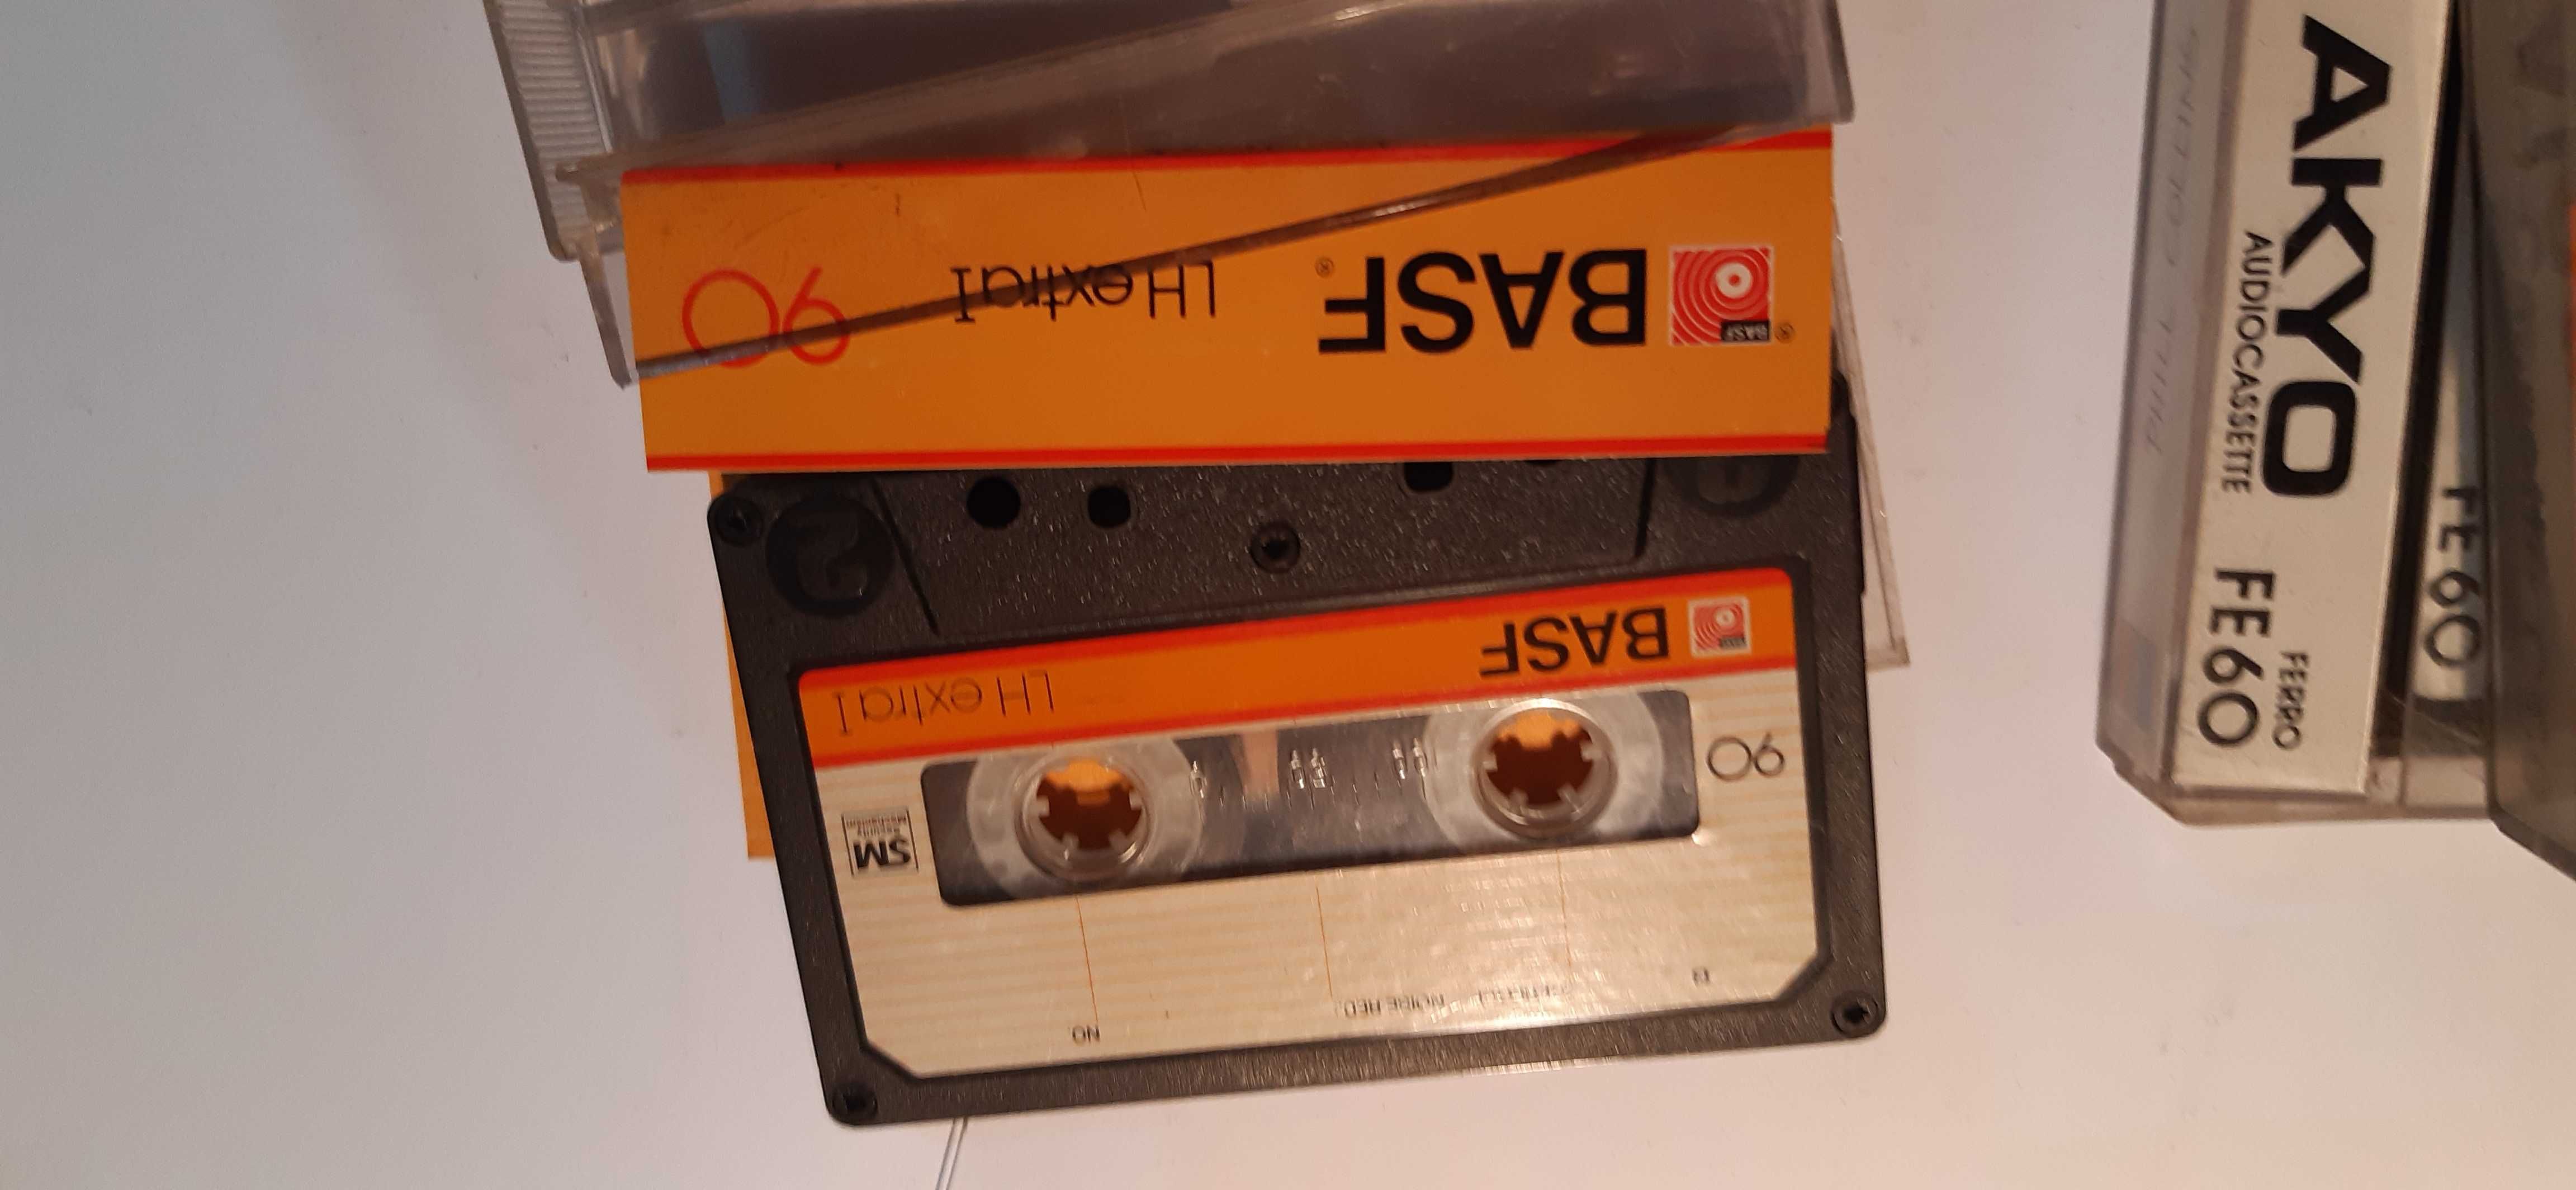 stare kasety magnetofonowe różne stare firmy basf i inne zestaw